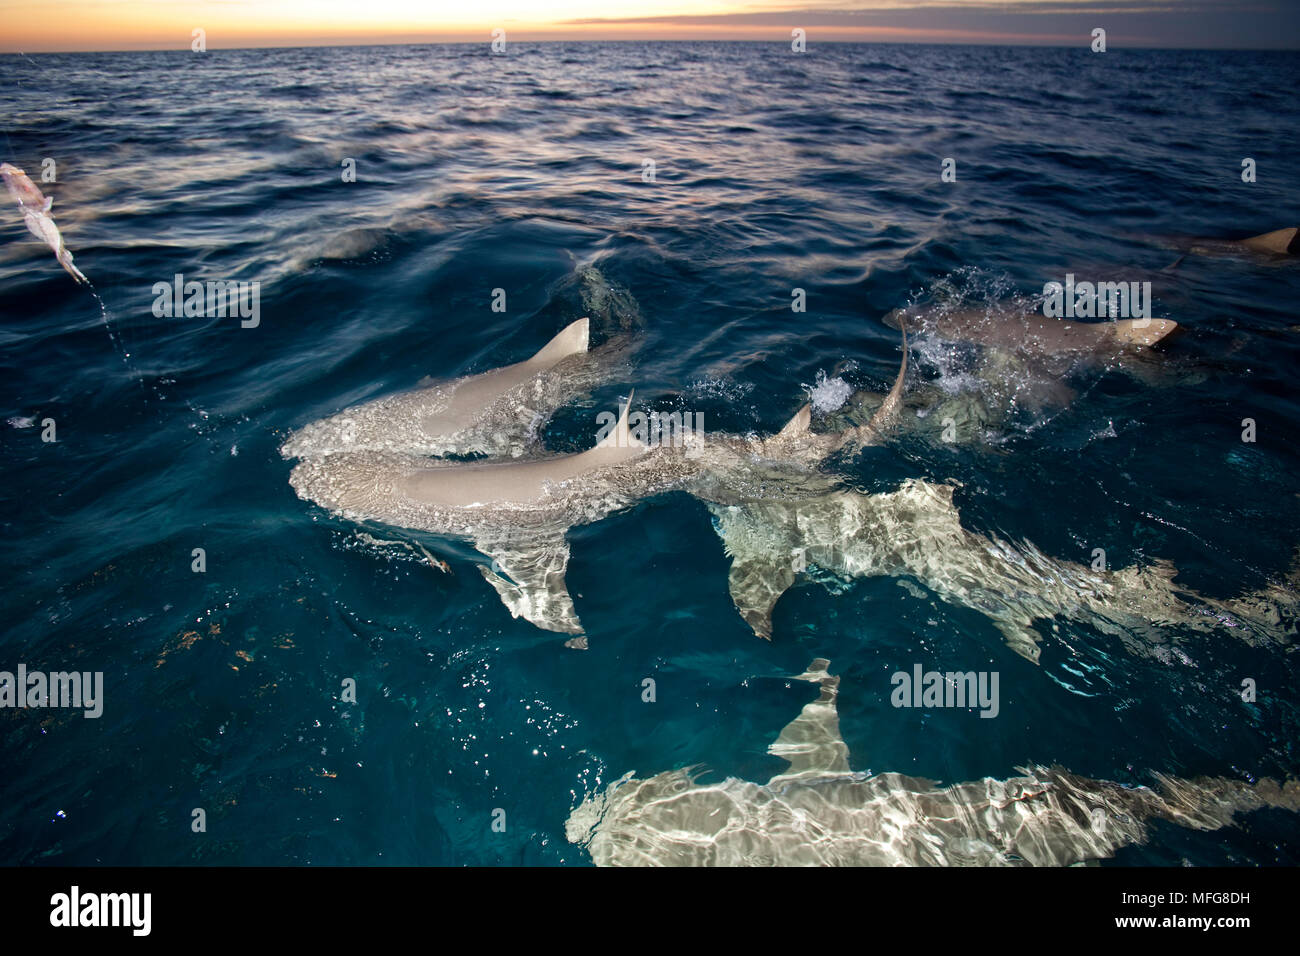 Les requins citron Negaprion brevirostris, nager à la surface, Nord des Bahamas, mer des Caraïbes, Océan Atlantique Banque D'Images